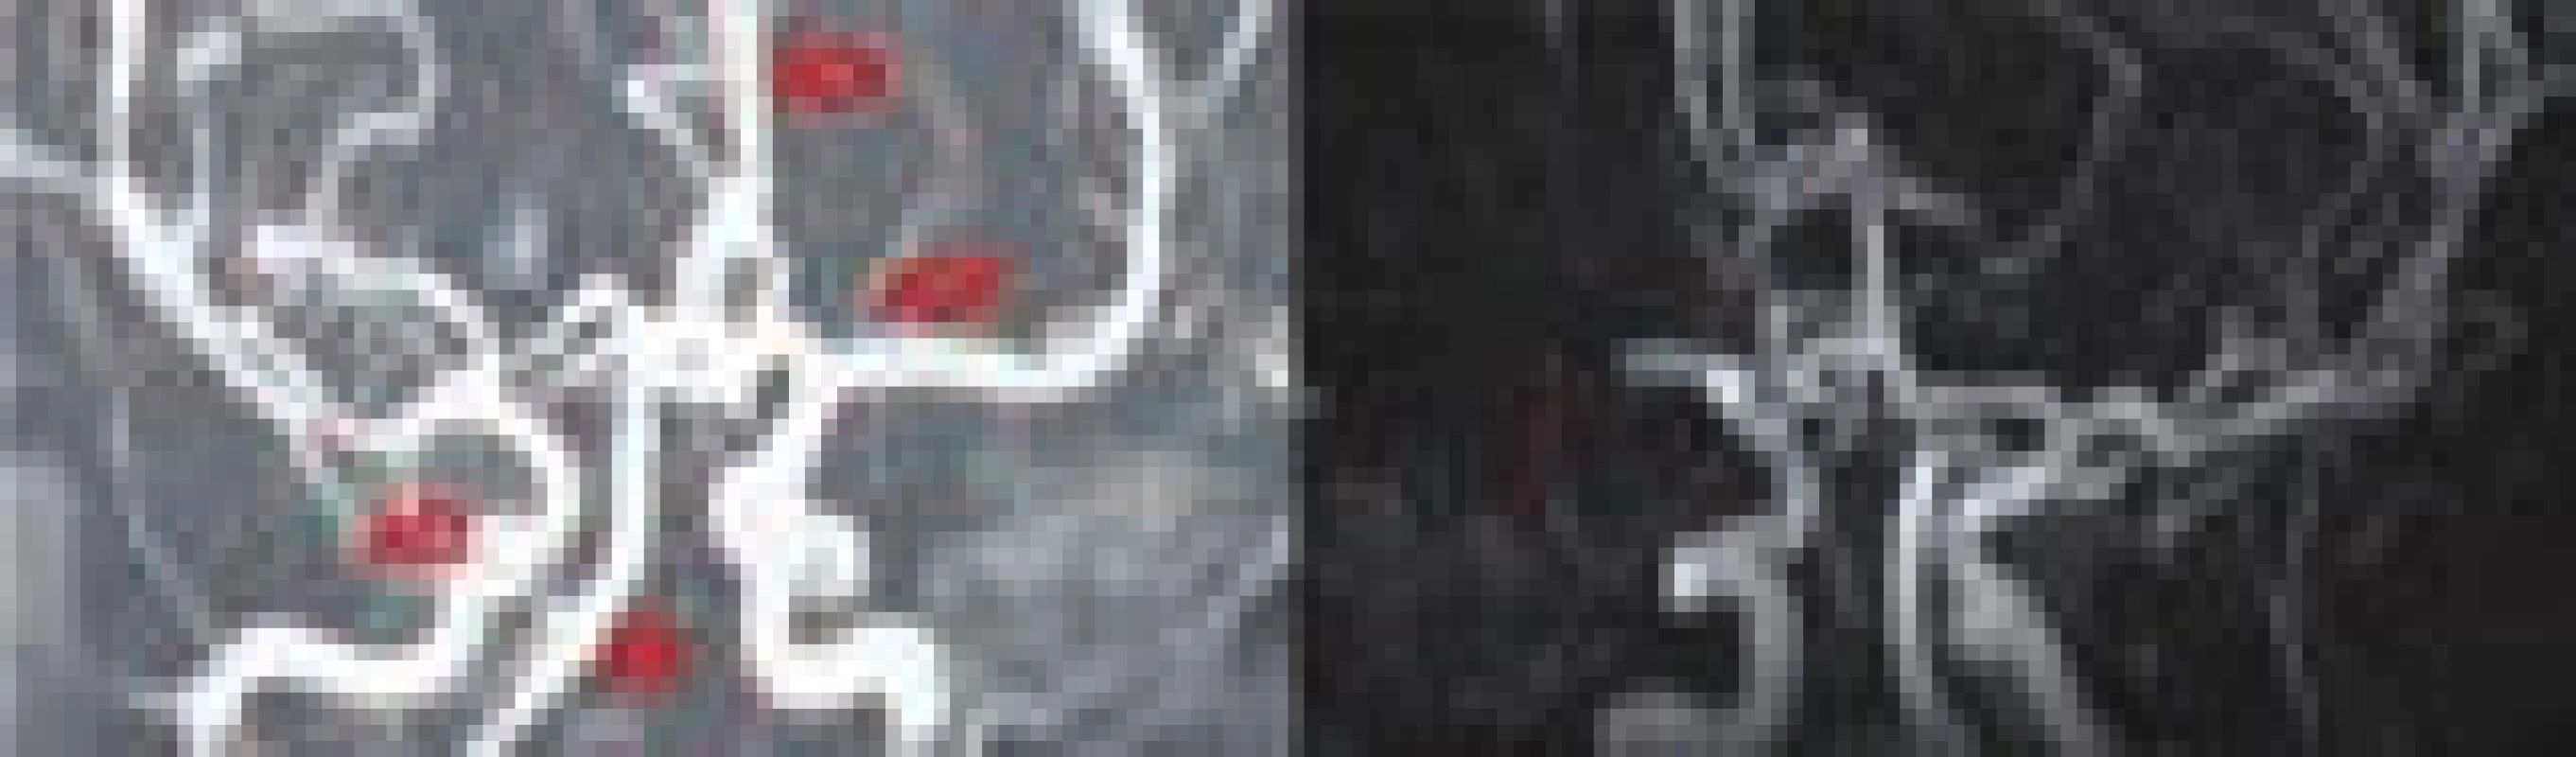 Intrakraniální MR angiografie, na prvním snímku normální nález (ACM – a. cerebri media, ACA – a. cerebri anterior, ACI – a. carotis interna, AB – a. basilaris), na druhém snímku šipkou označena okluze ACM.